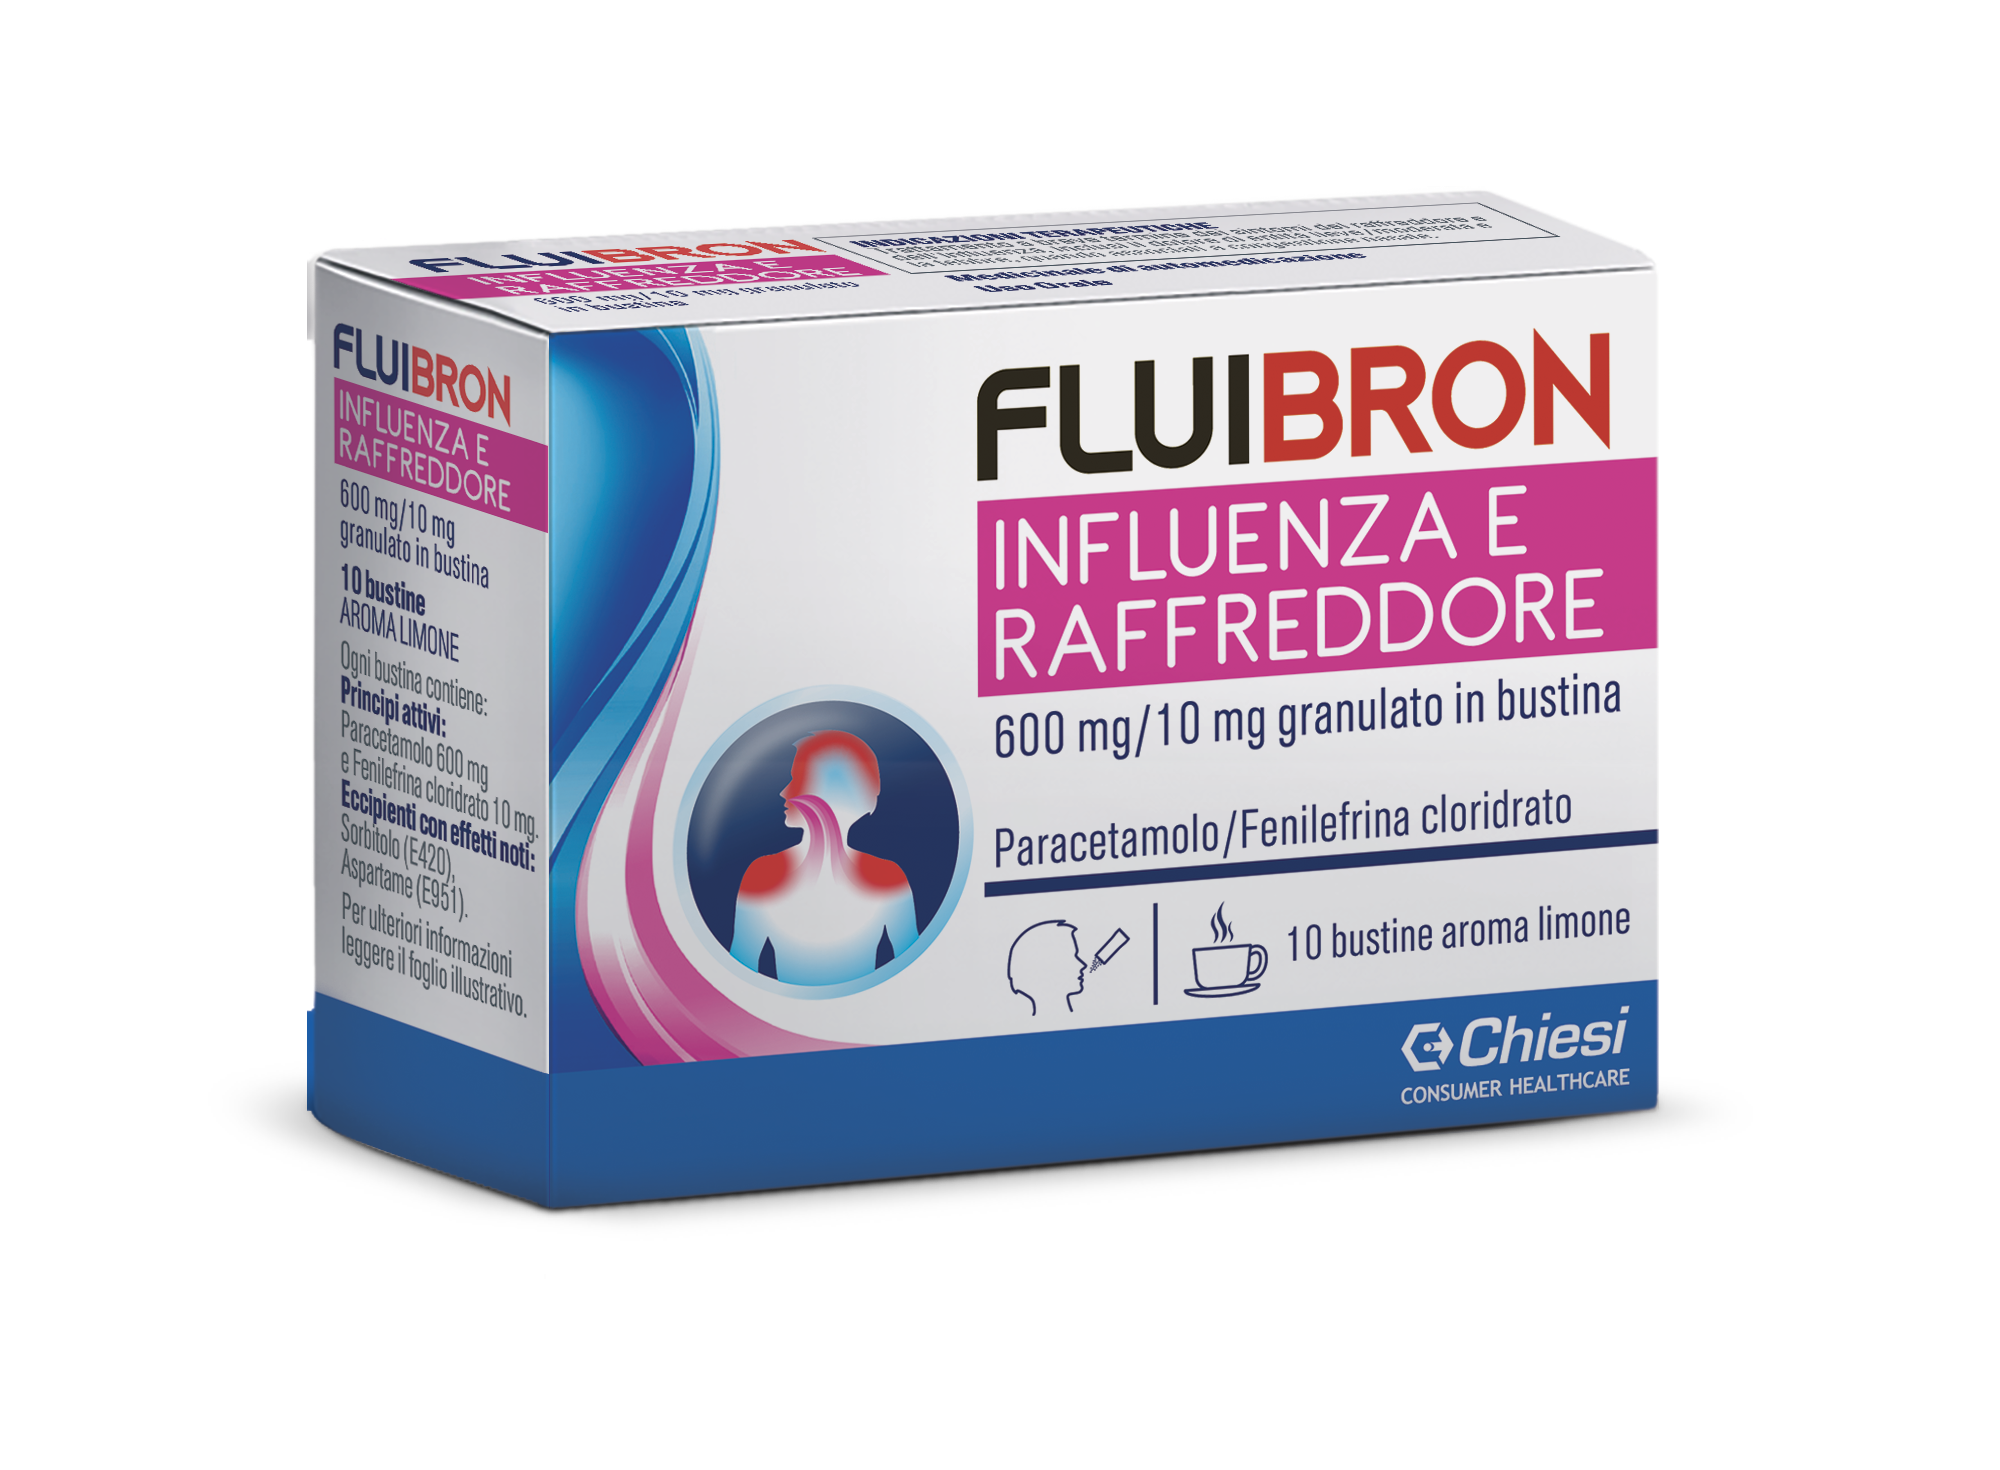 Immagine della confezione di Fluibron Influenza e Raffreddore, farmaco di Chiesi Farmaceutici